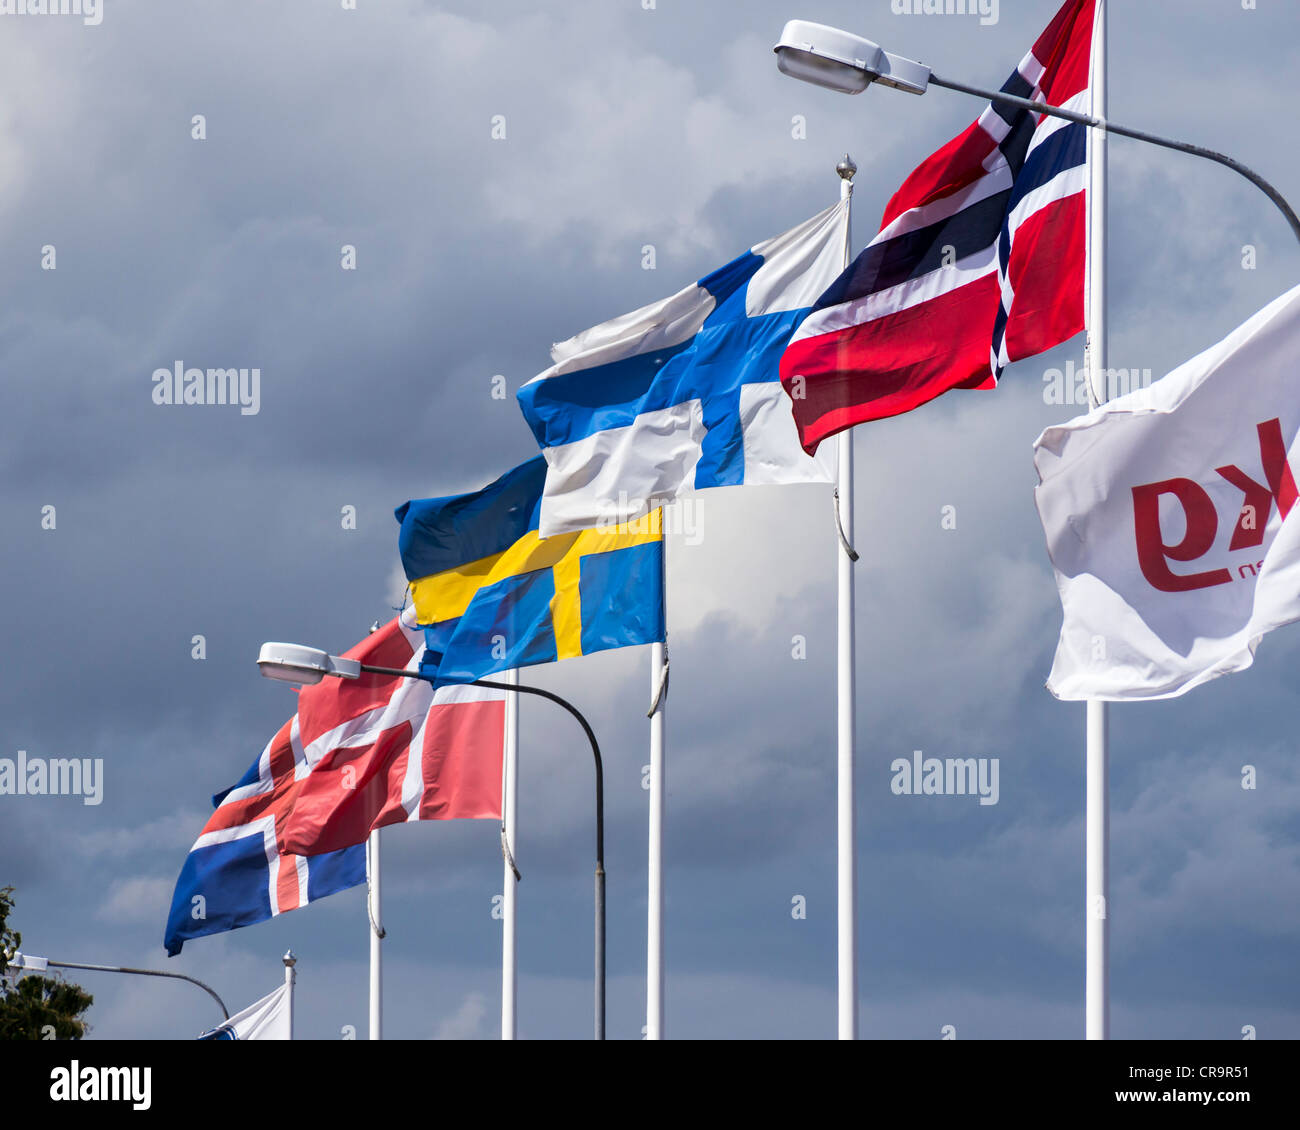 Las banderas de los países nórdicos (de izquierda a derecha, Islandia, Dinamarca, Suecia, Finlandia y Noruega) vuelan en el puerto de Oskarshamn Foto de stock